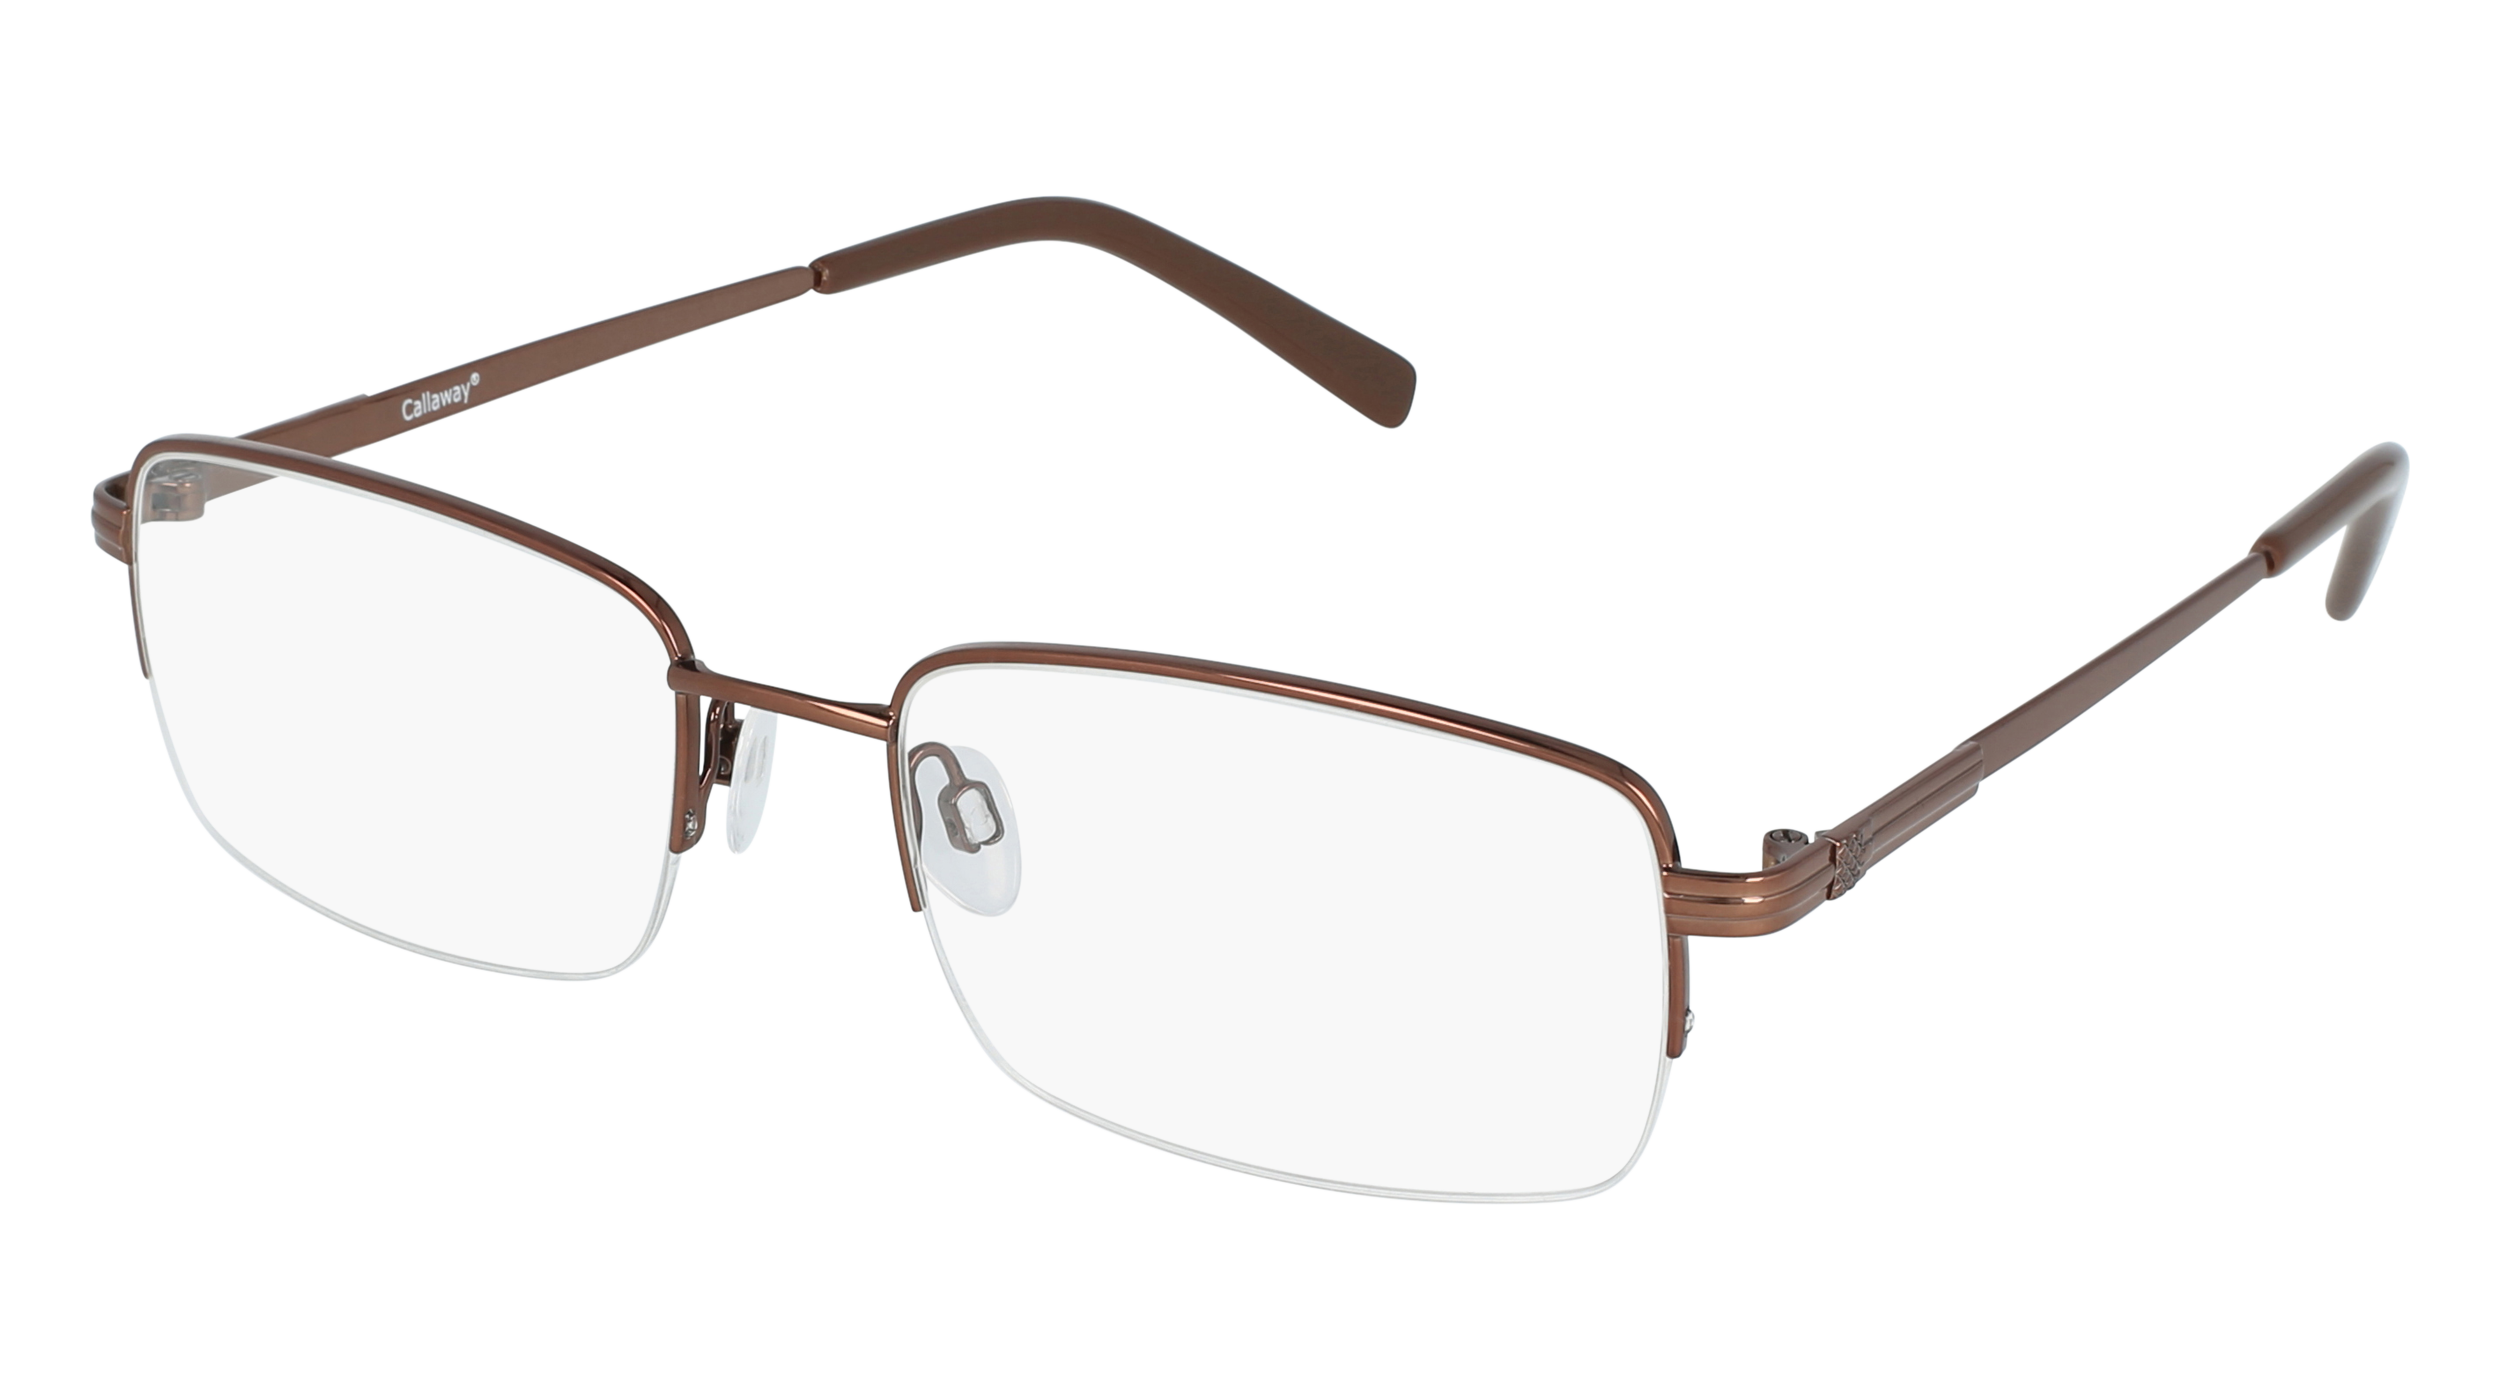 C C 05 men's eyeglasses (from the side)